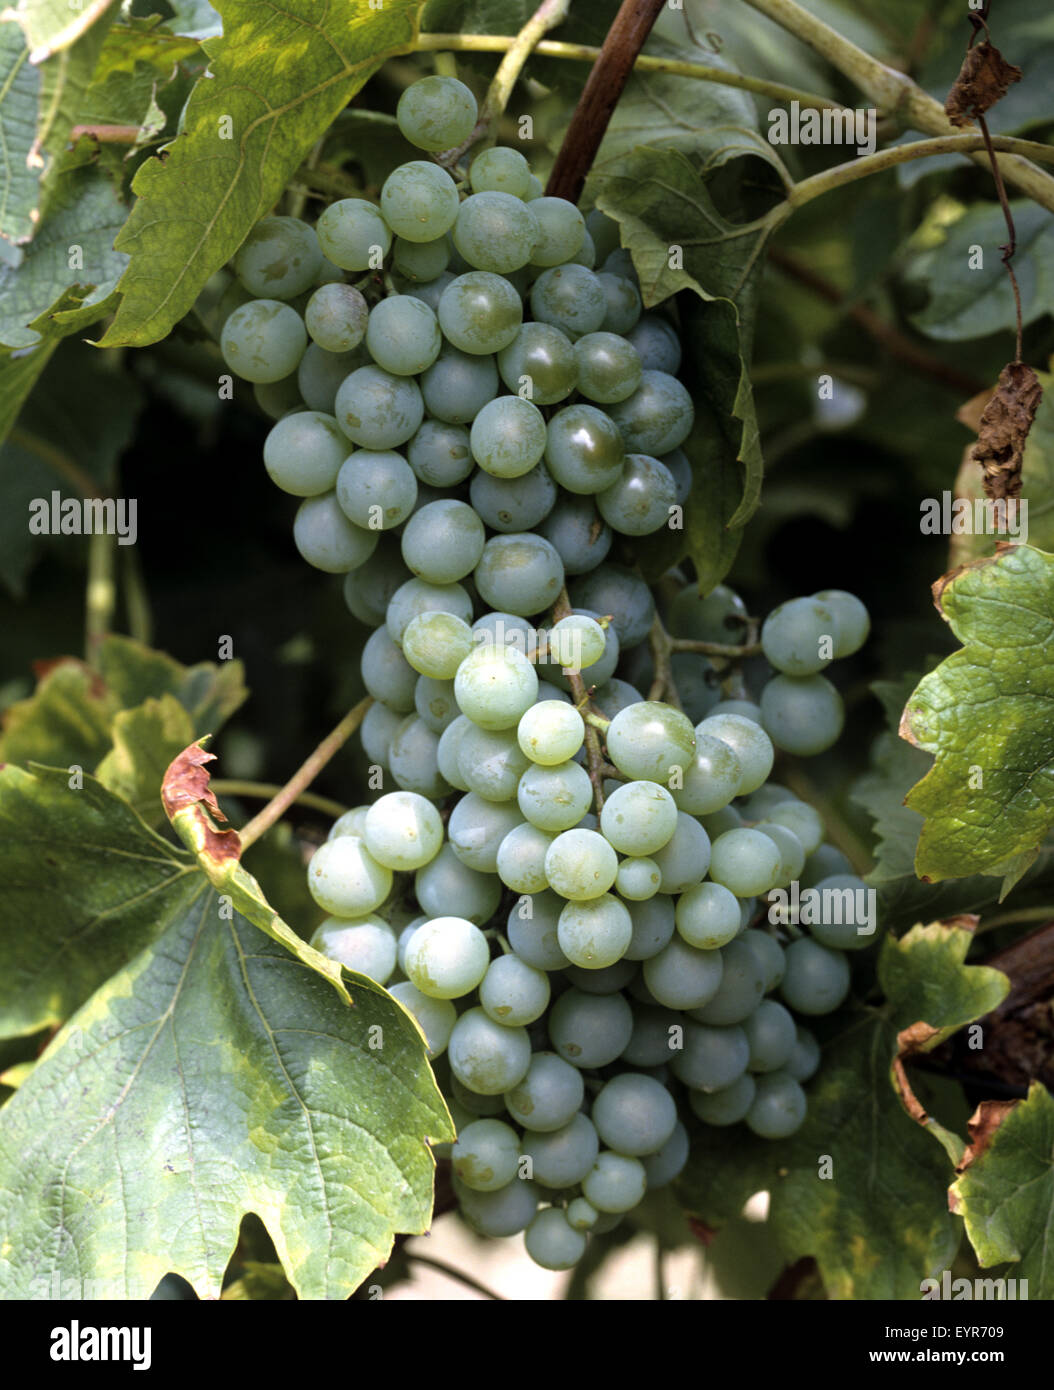 Weintrauben, Bella Blanca, Wein, Weinpflanzen, Reben, Fruechte, Beeren, Obst, Stock Photo